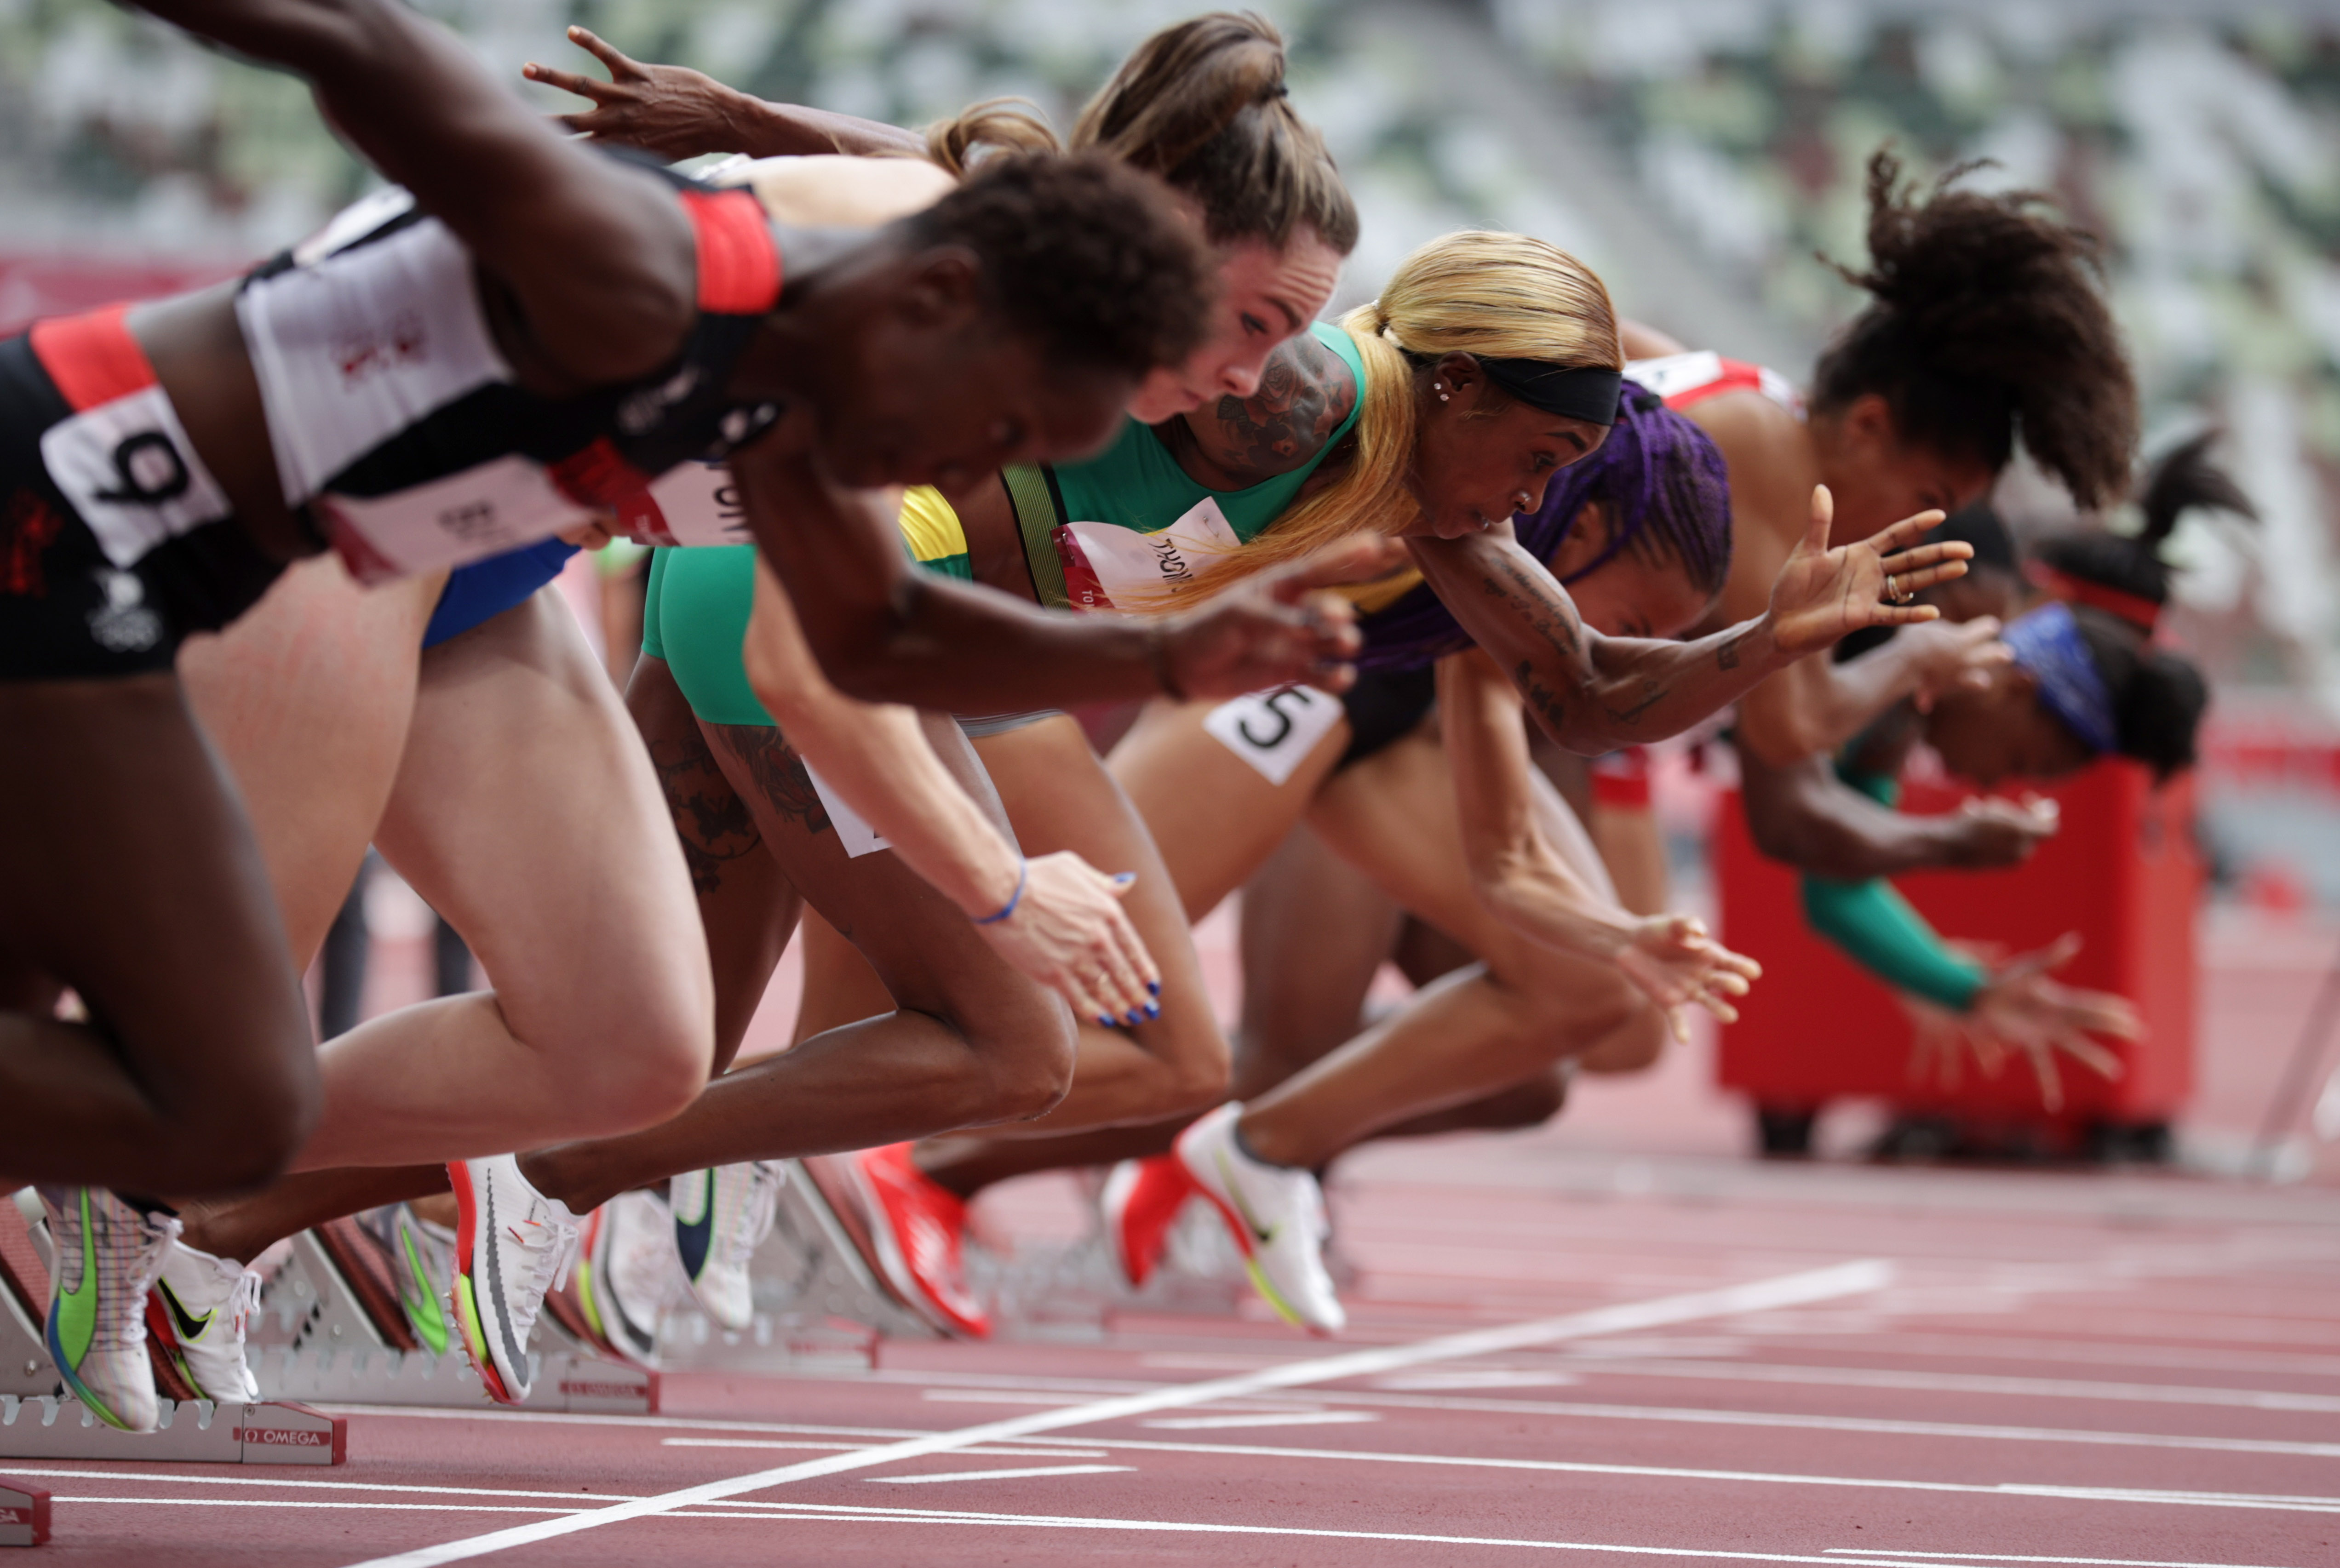 Время бега 100 метров. Бег 100 метров женщины. Легкоатлетки с Ямайки. Эстафета Франция женщины легкая атлетика.